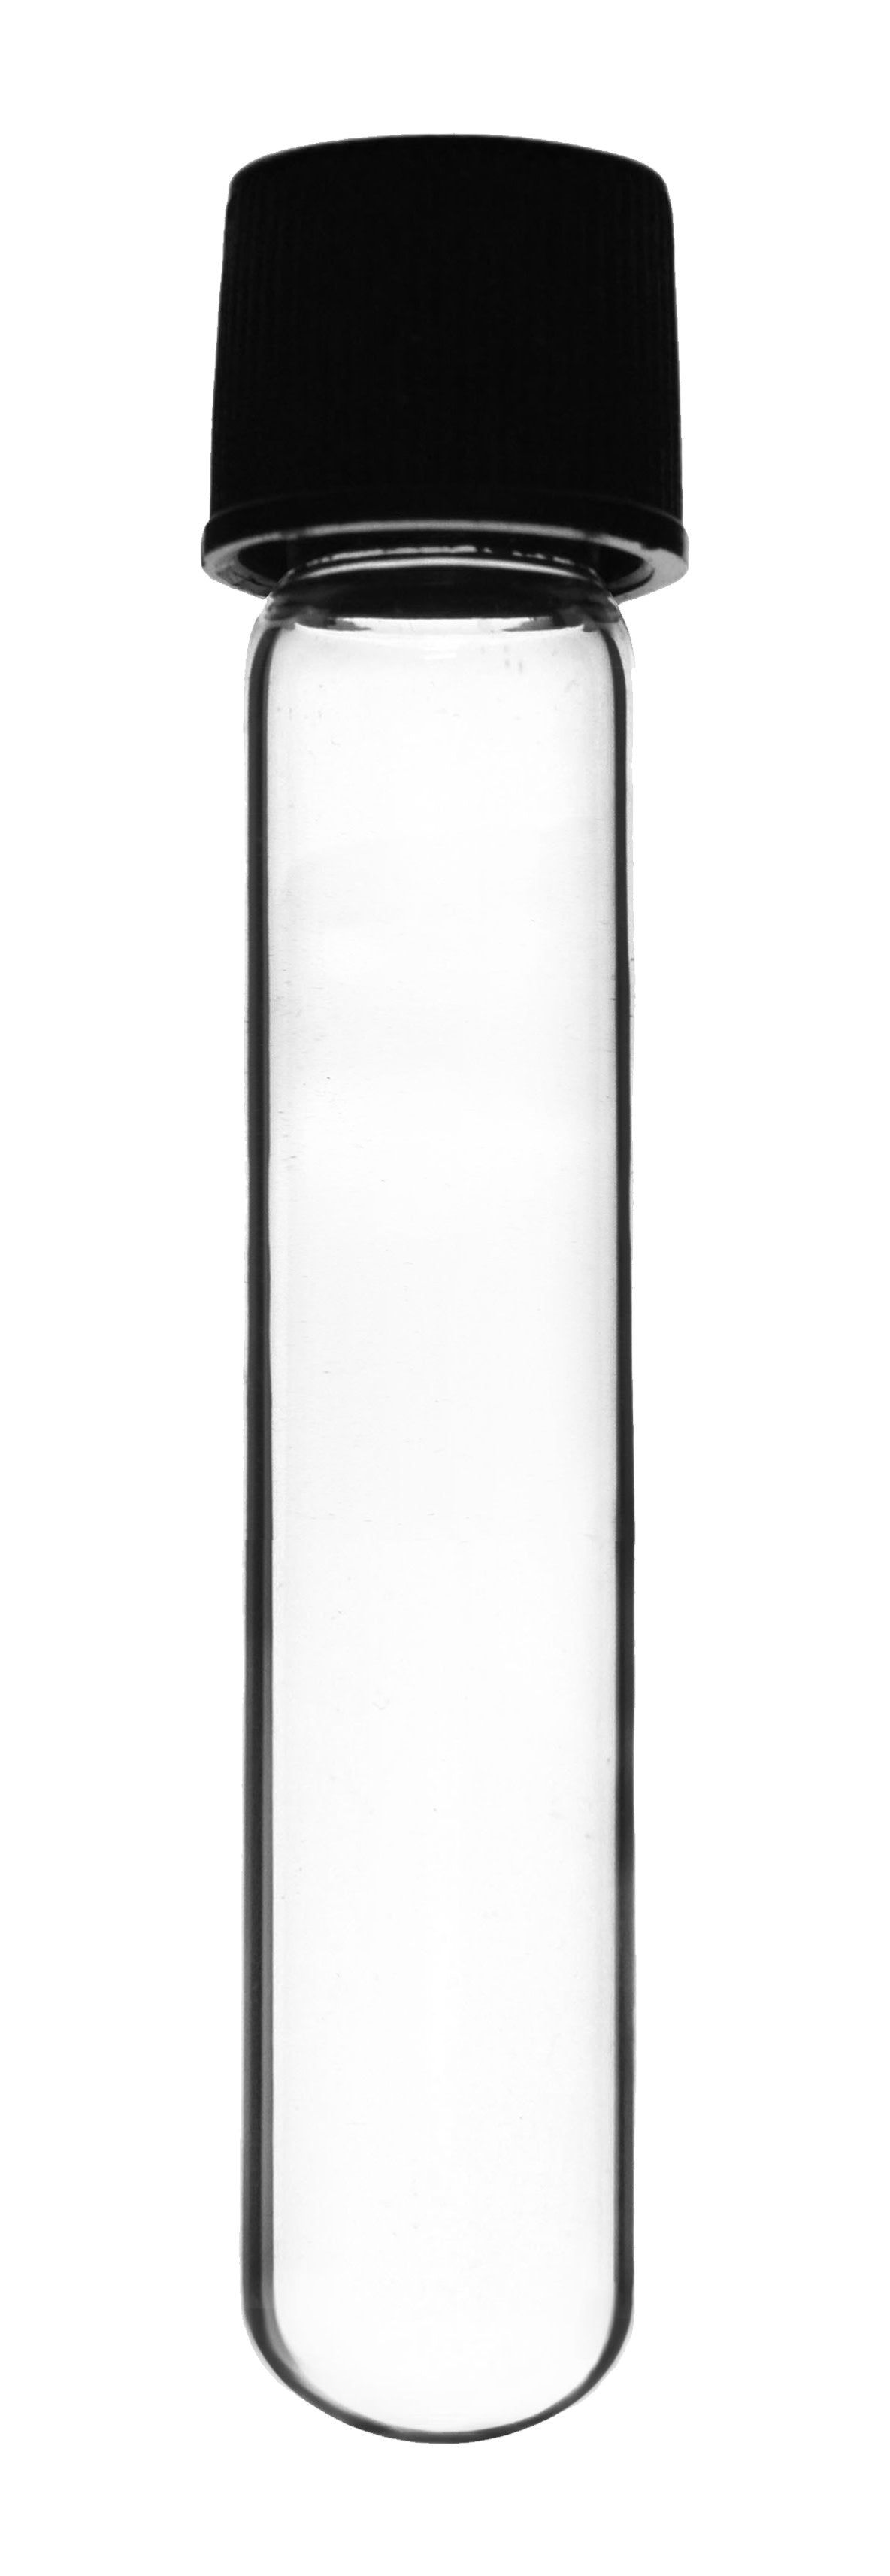 Borosilicate Glass Test Tubes, 5 ml, Round Bottom with Screw Cap